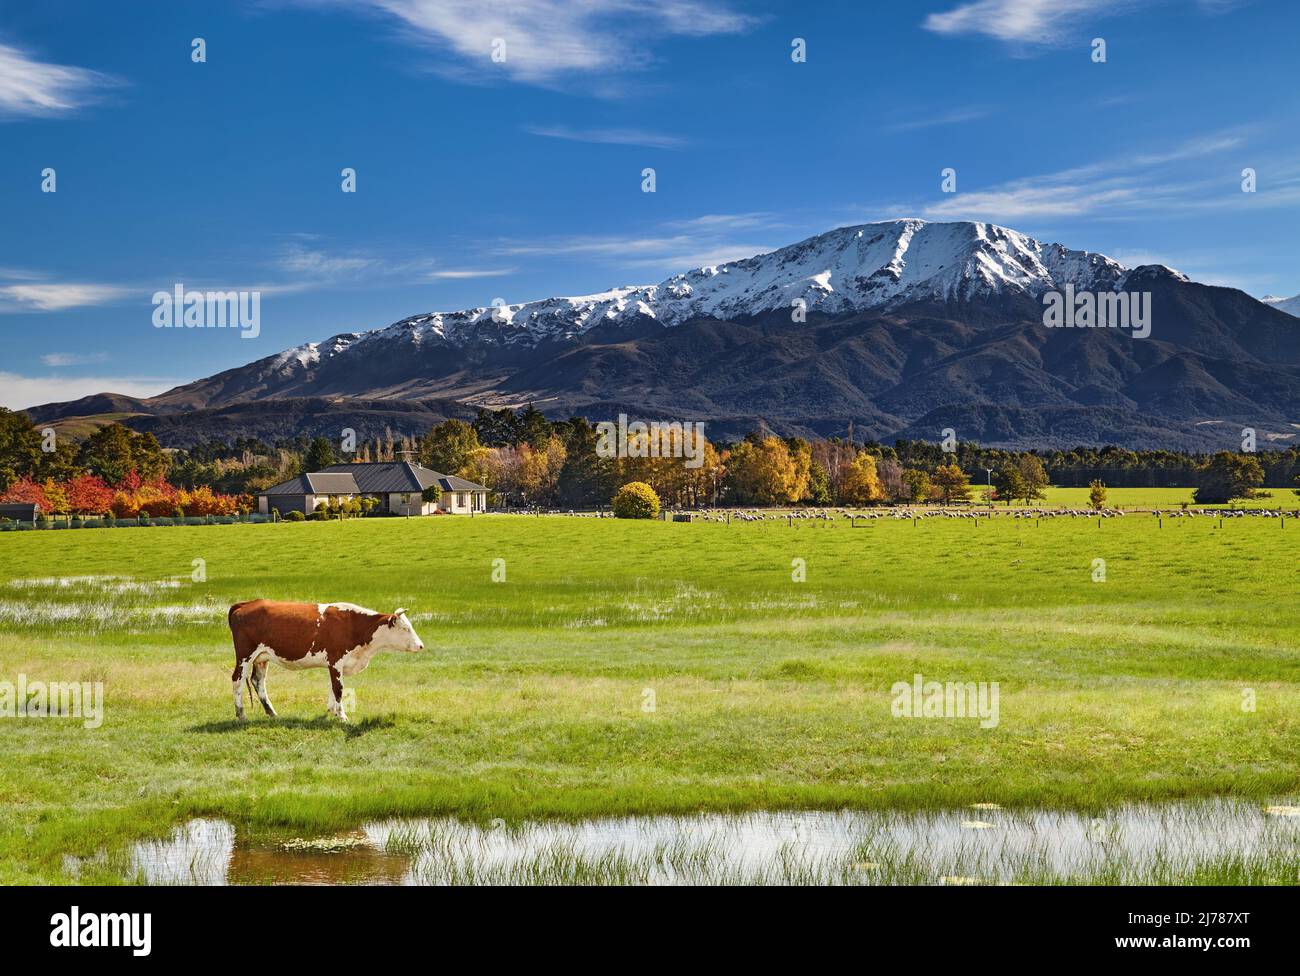 Ackerland mit weidenden Schafen und Kühen im wunderschönen Tal, Südinsel, Neuseeland Stockfoto